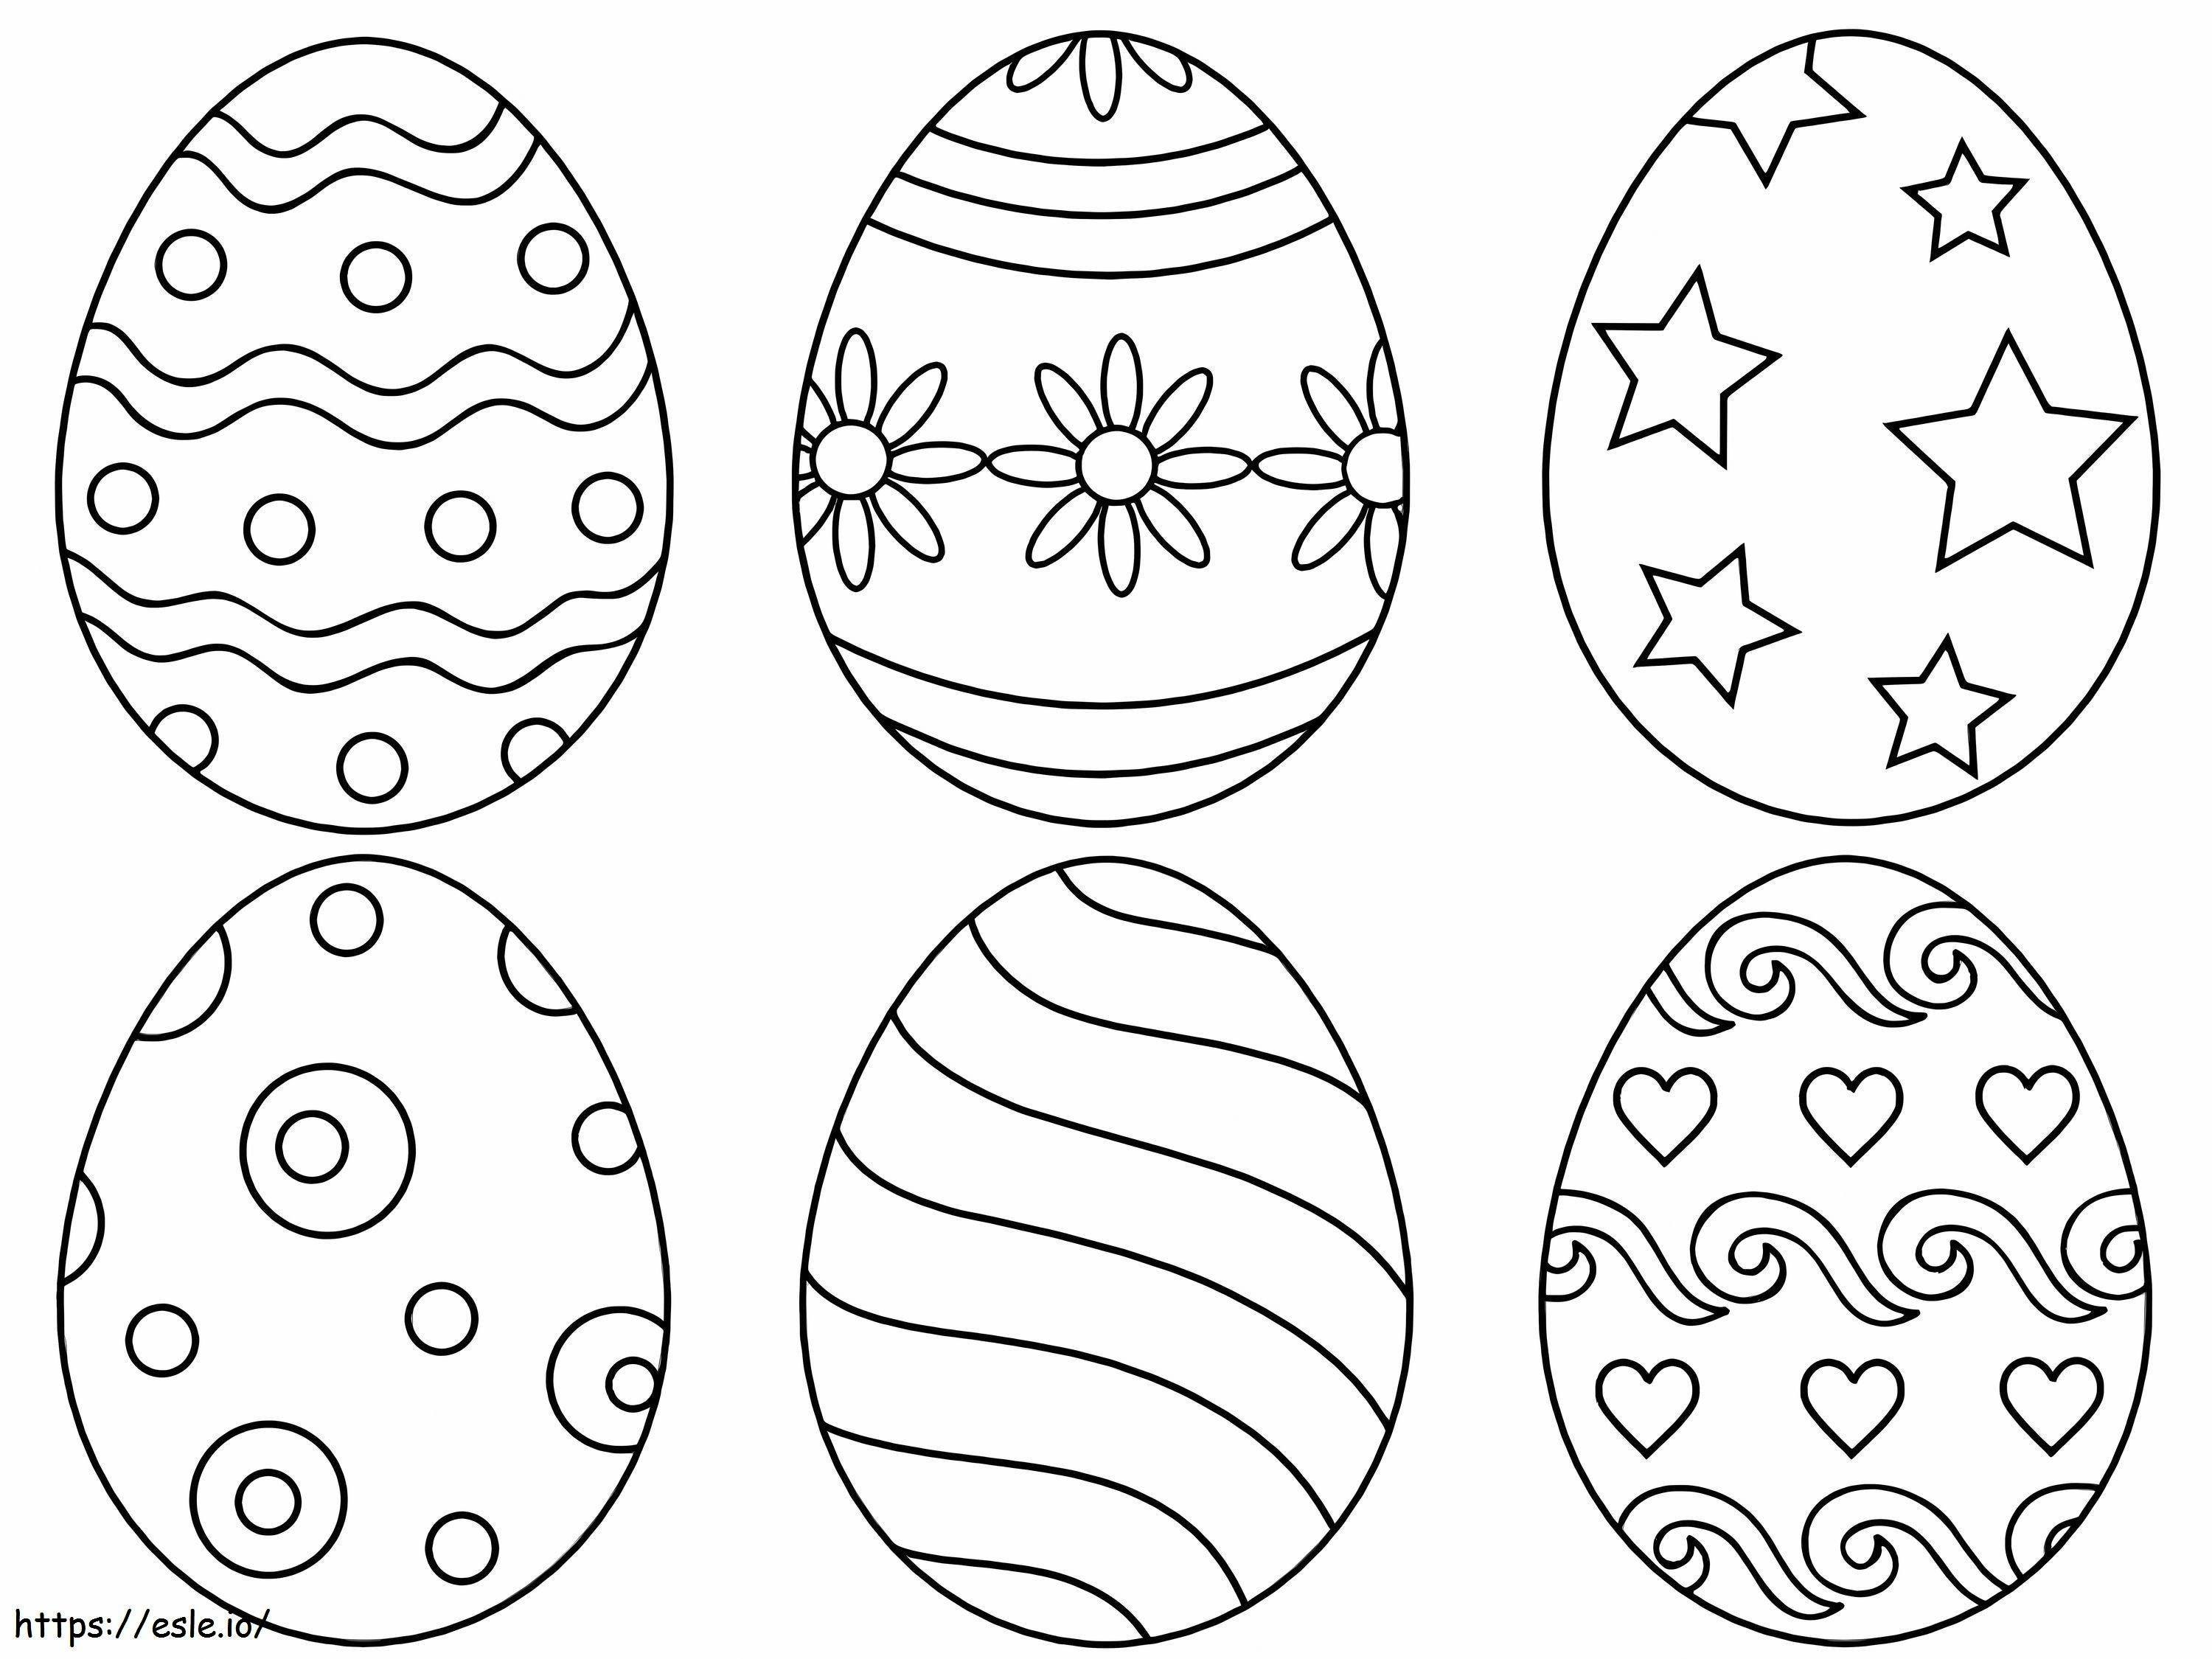 Seis huevos de Pascua para colorear